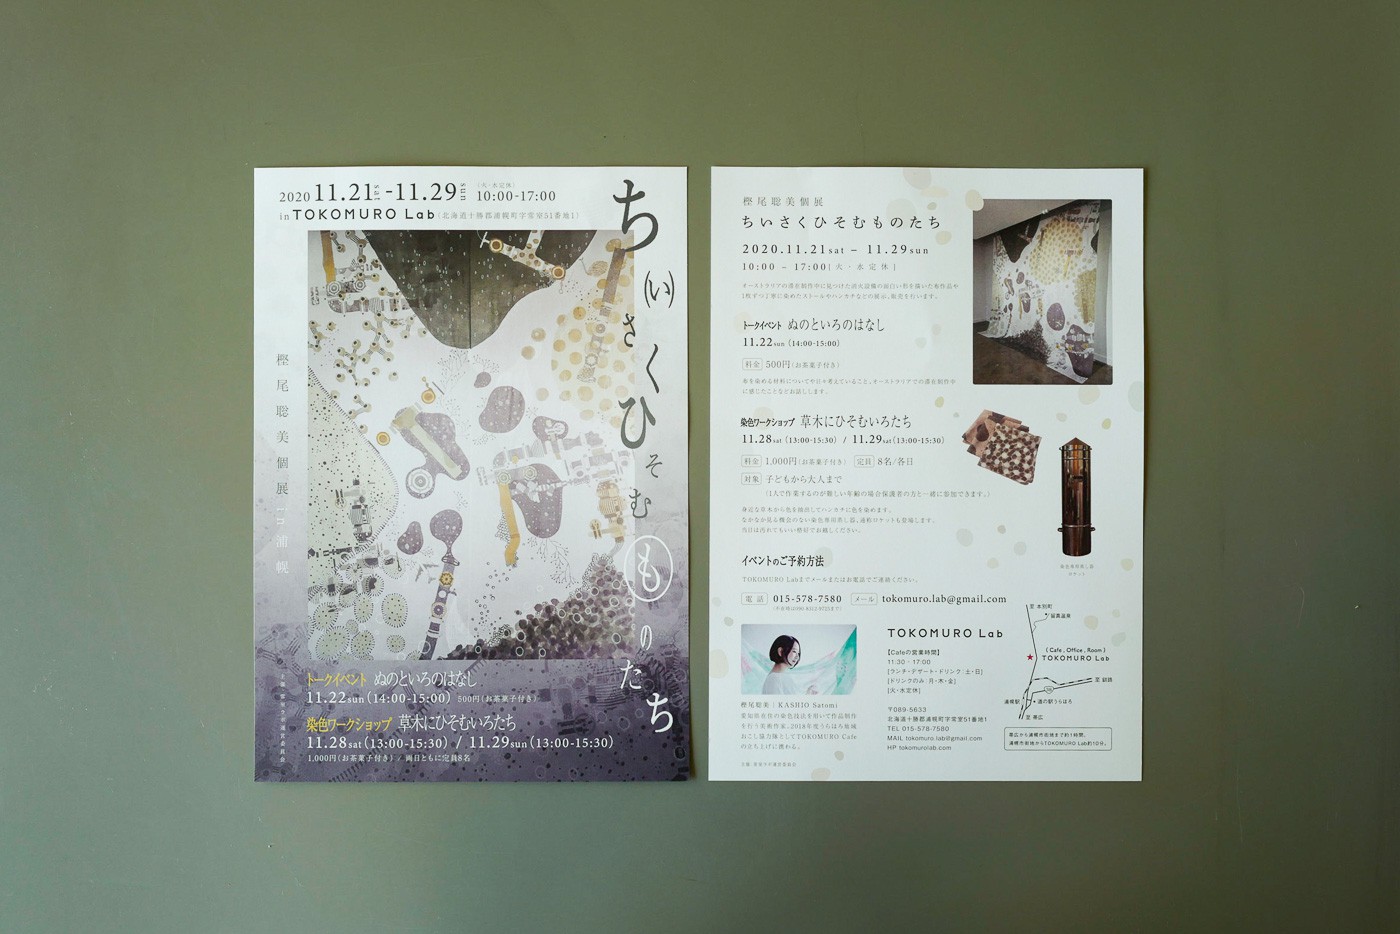 樫尾聡美個展2020のフライヤーデザインのカバー画像